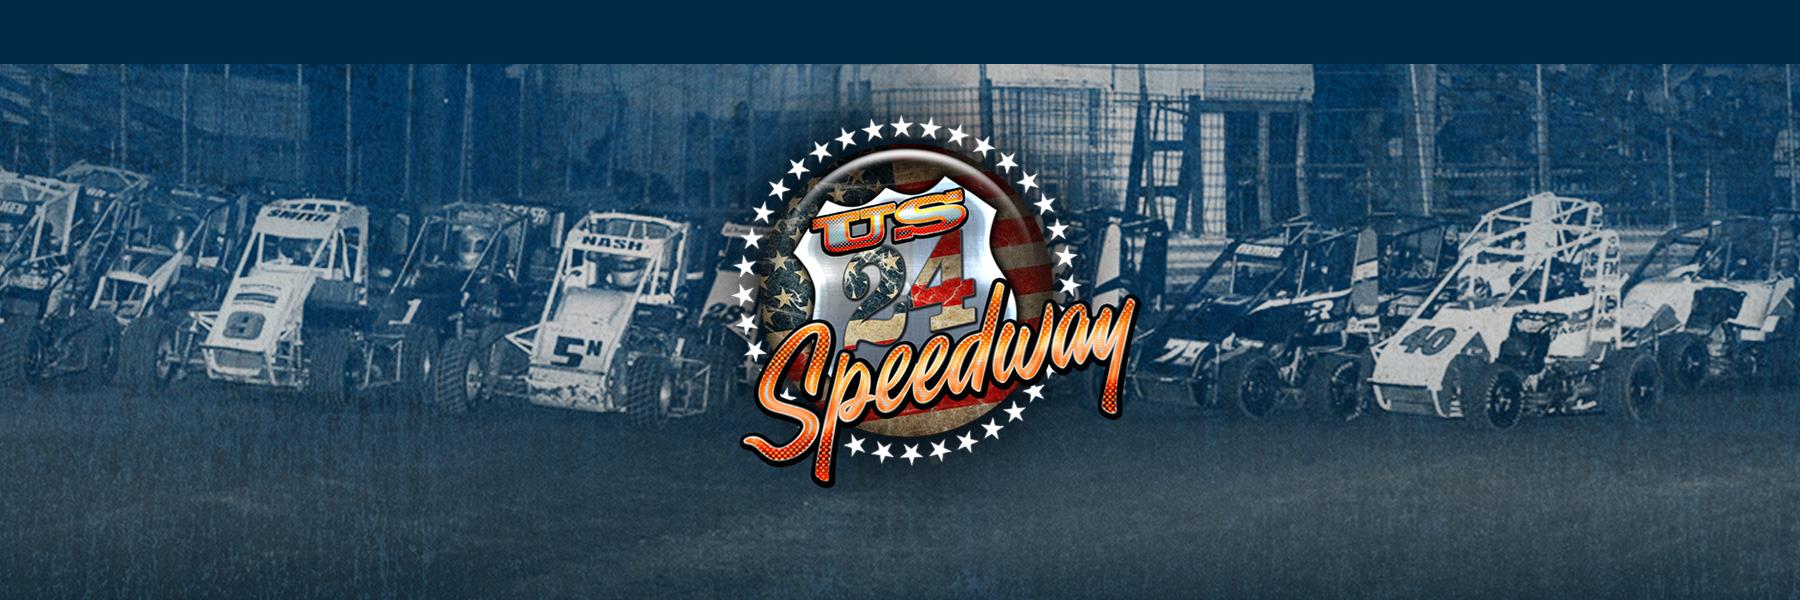 6/25/2022 - US 24 Speedway